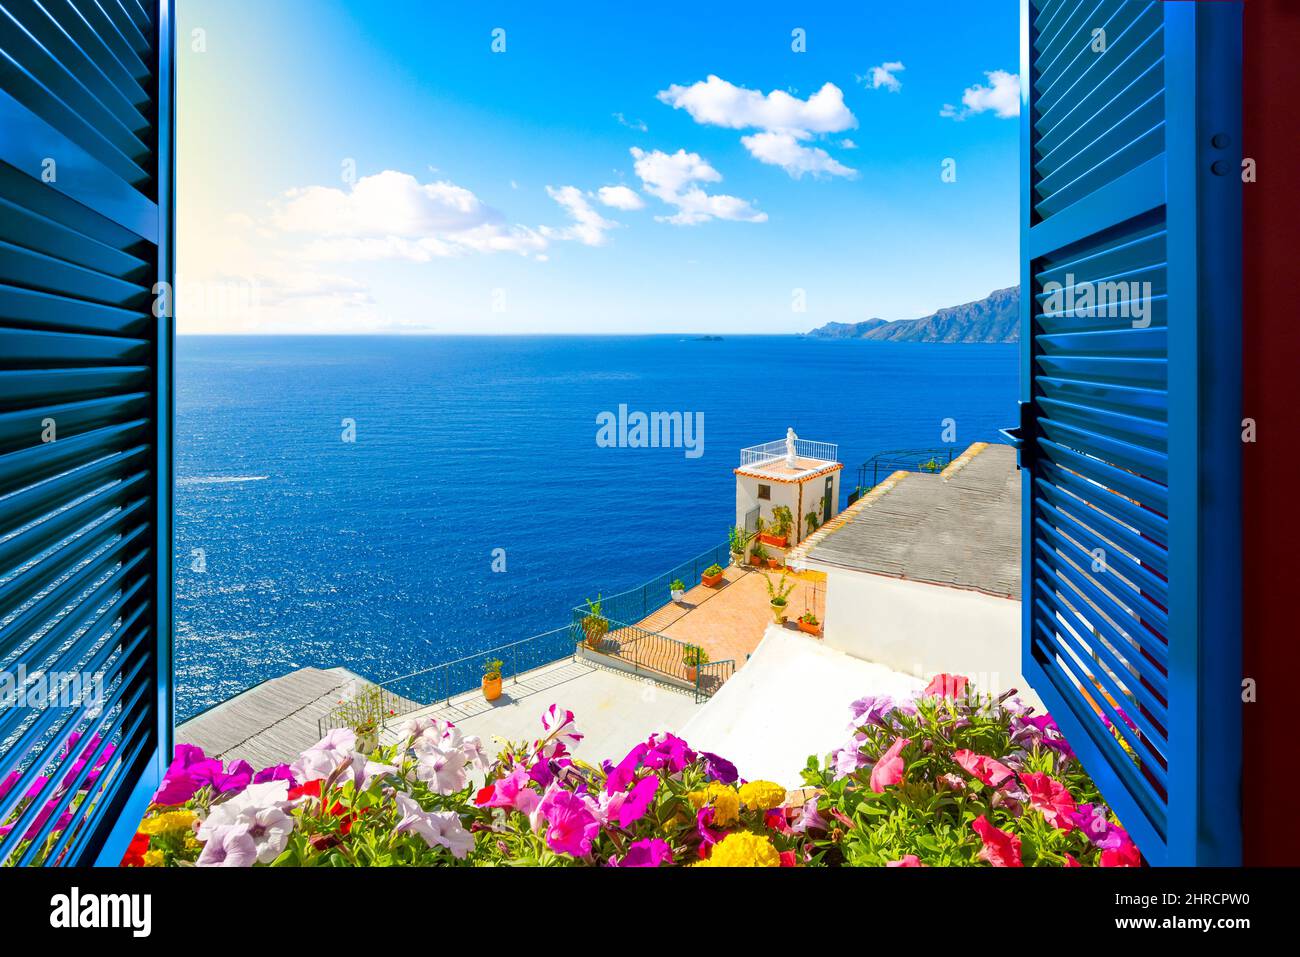 Vue panoramique sur une fenêtre ouverte par une belle journée d'été sur la mer Méditerranée et la côte italienne depuis une chambre le long de la côte amalfitaine près de Sorrente, Italie Banque D'Images